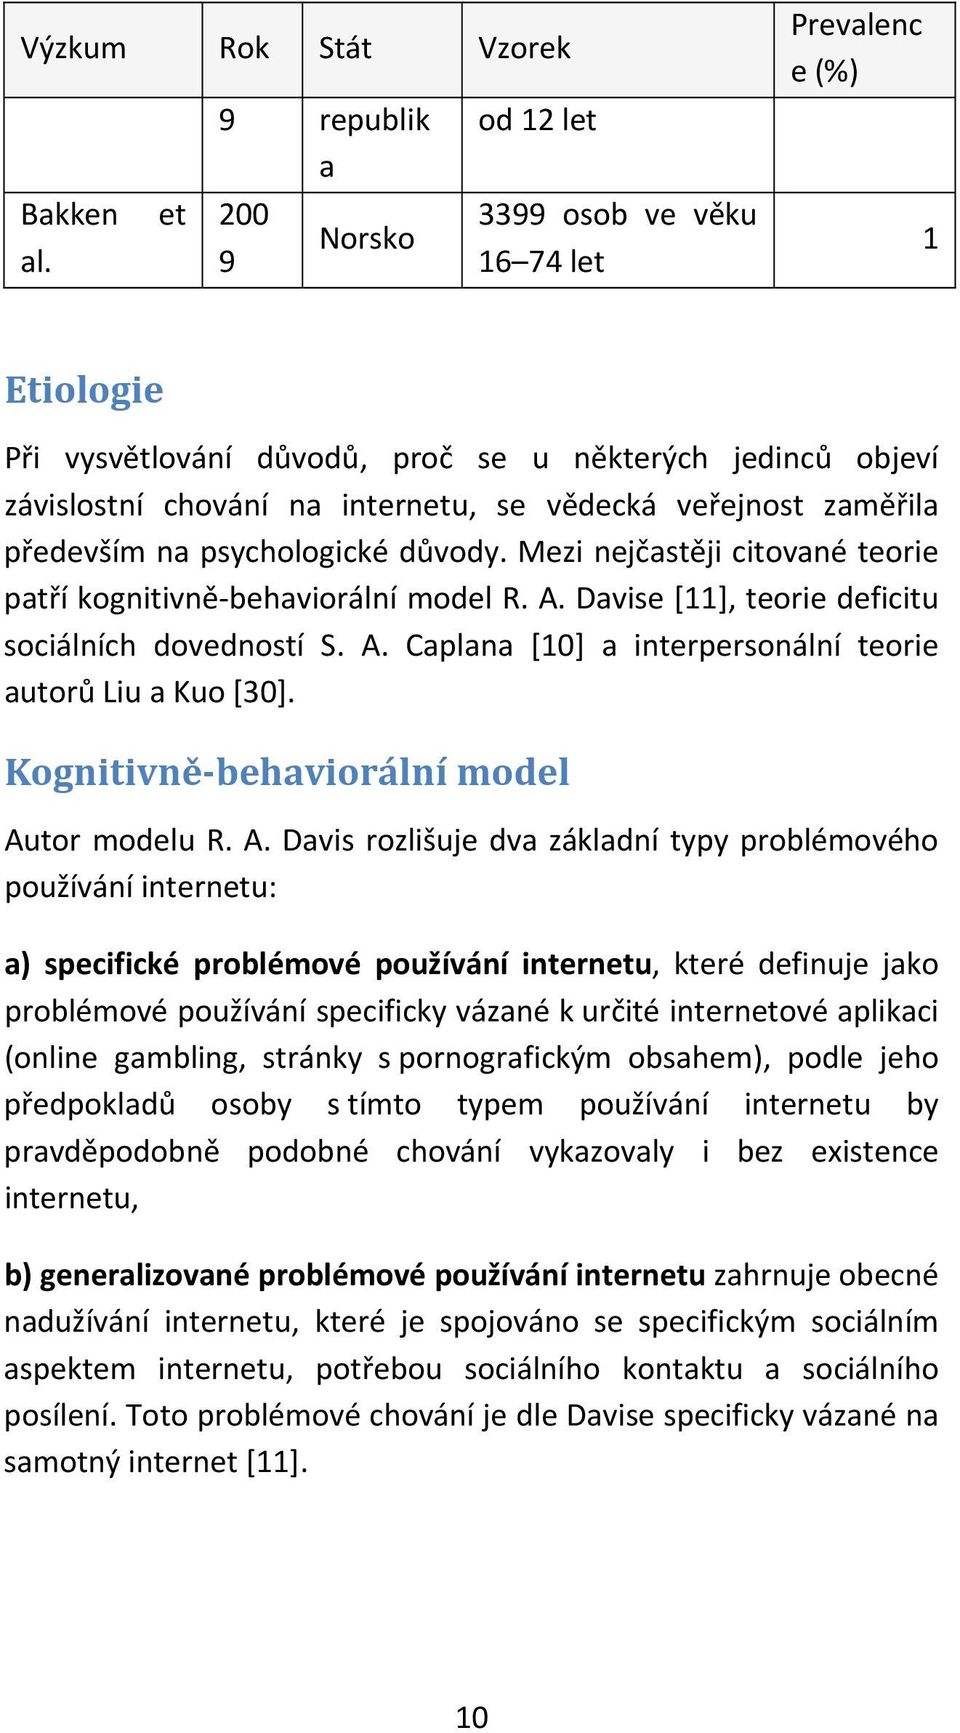 veřejnost zaměřila především na psychologické důvody. Mezi nejčastěji citované teorie patří kognitivně behaviorální model R. A. Davise [11], teorie deficitu sociálních dovedností S. A. Caplana [10] a interpersonální teorie autorů Liu a Kuo [30].